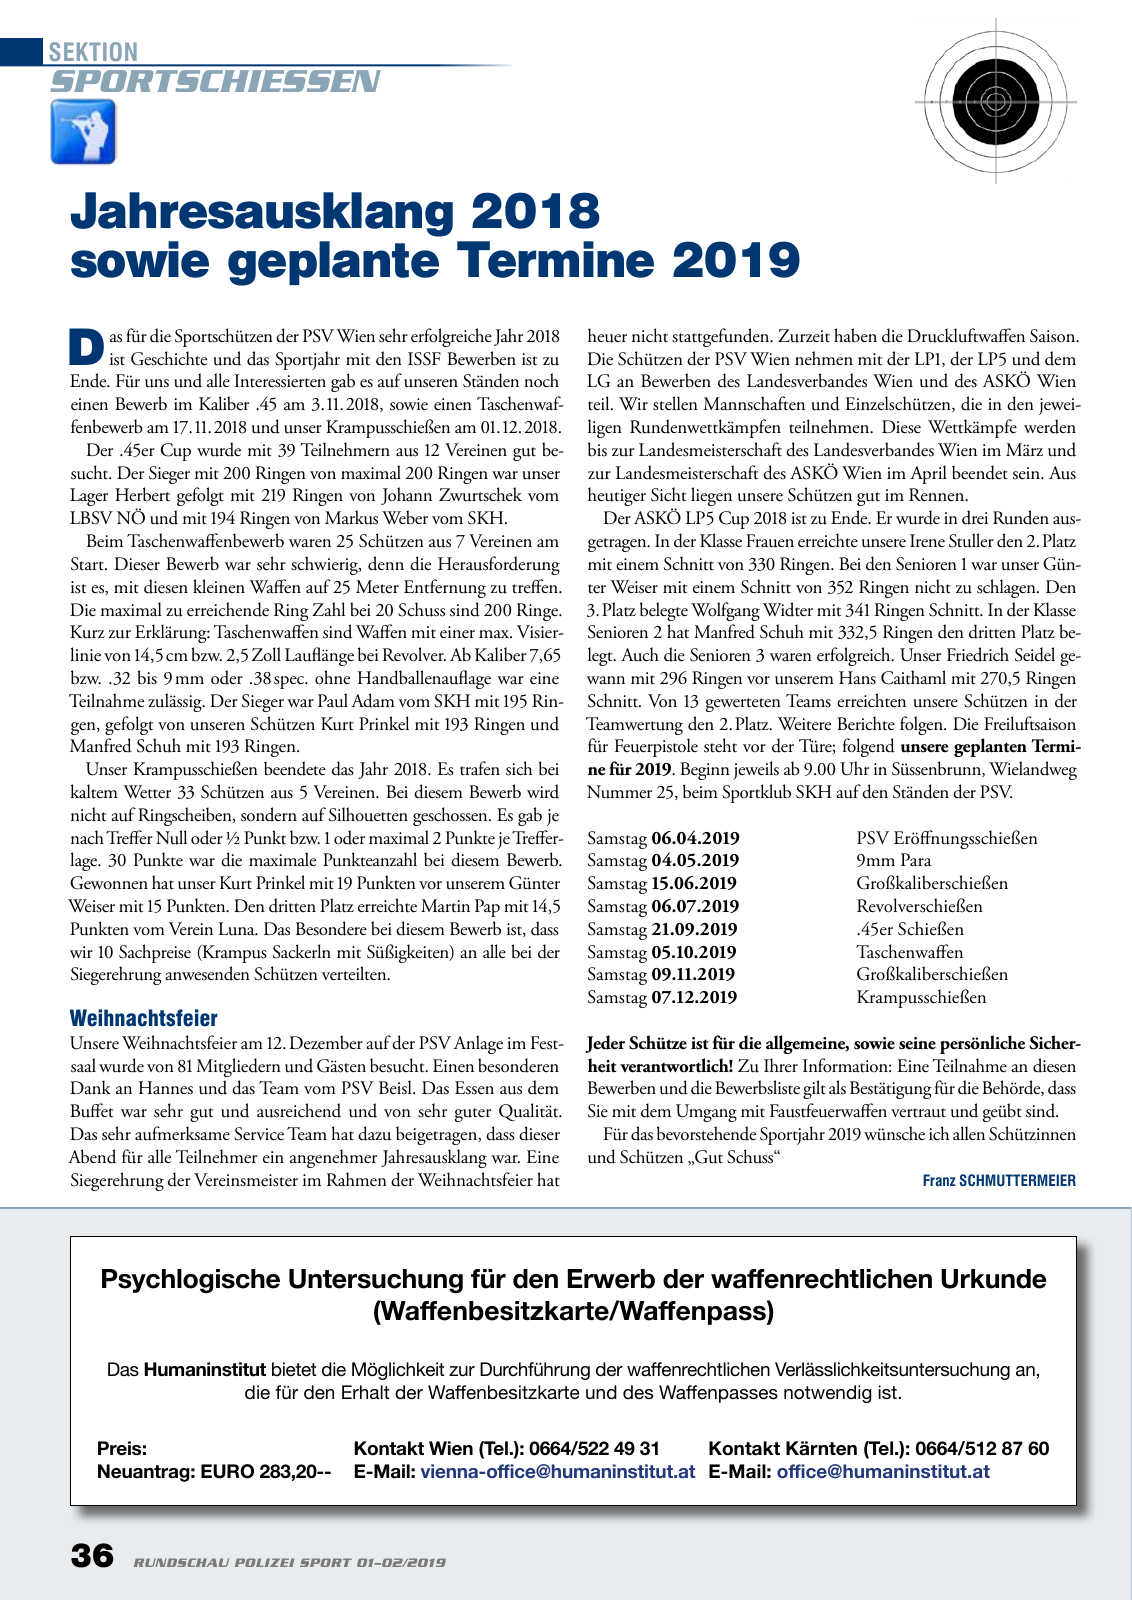 Vorschau Rundschau Polizei Sport 01-02/2019 Seite 36